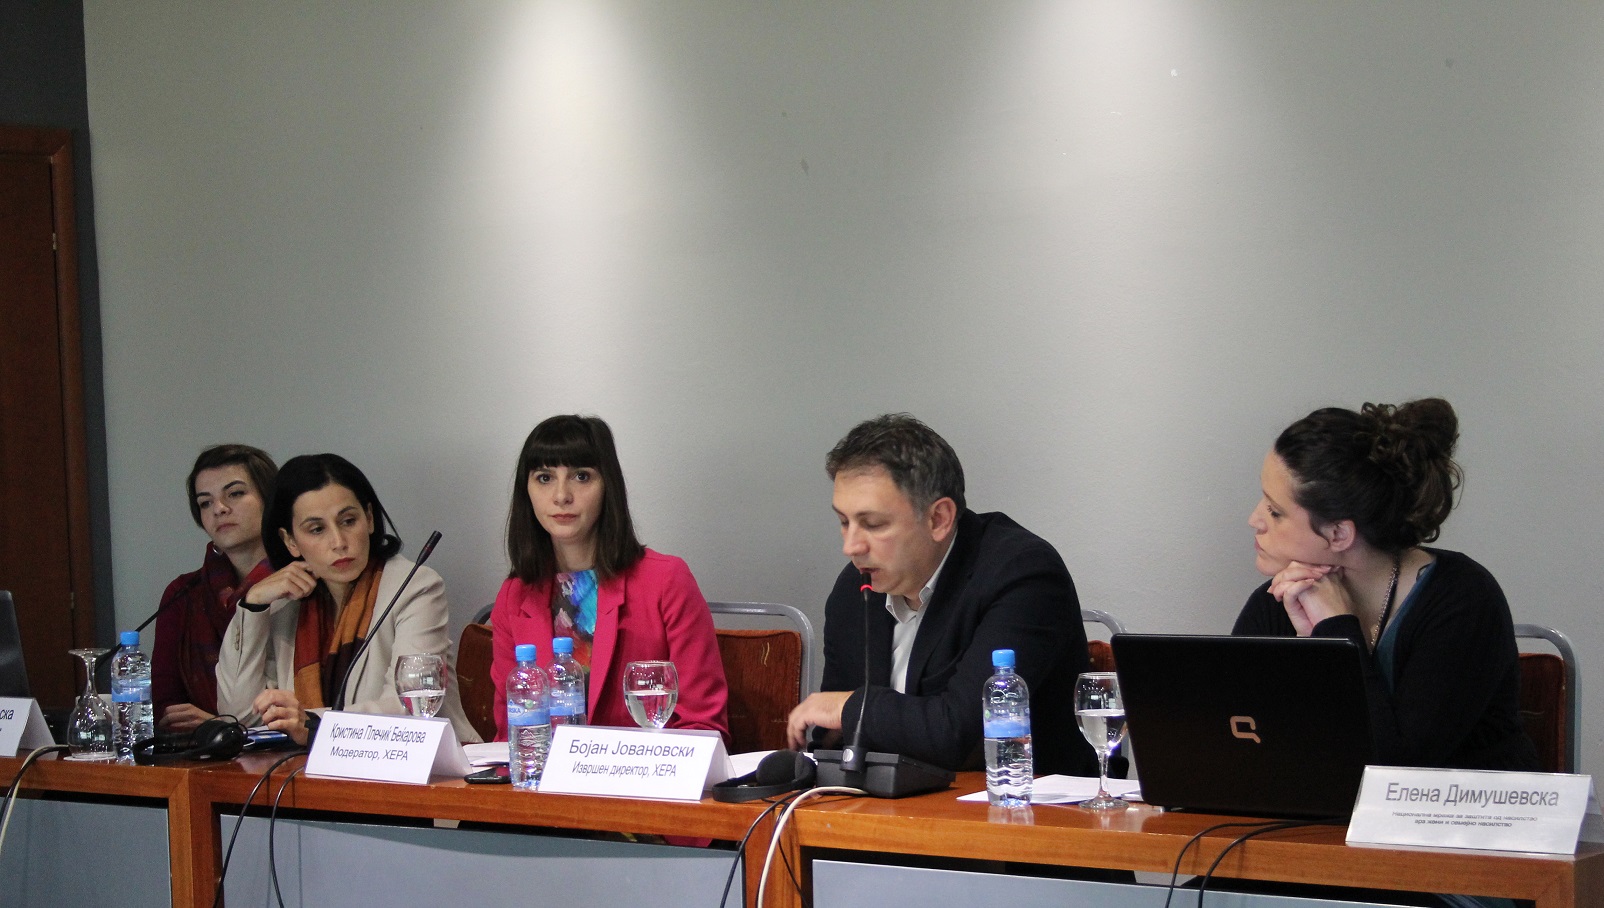 (Македонски) Соопштение по повод конференцијата за стандардизирани услуги за семејно насилство